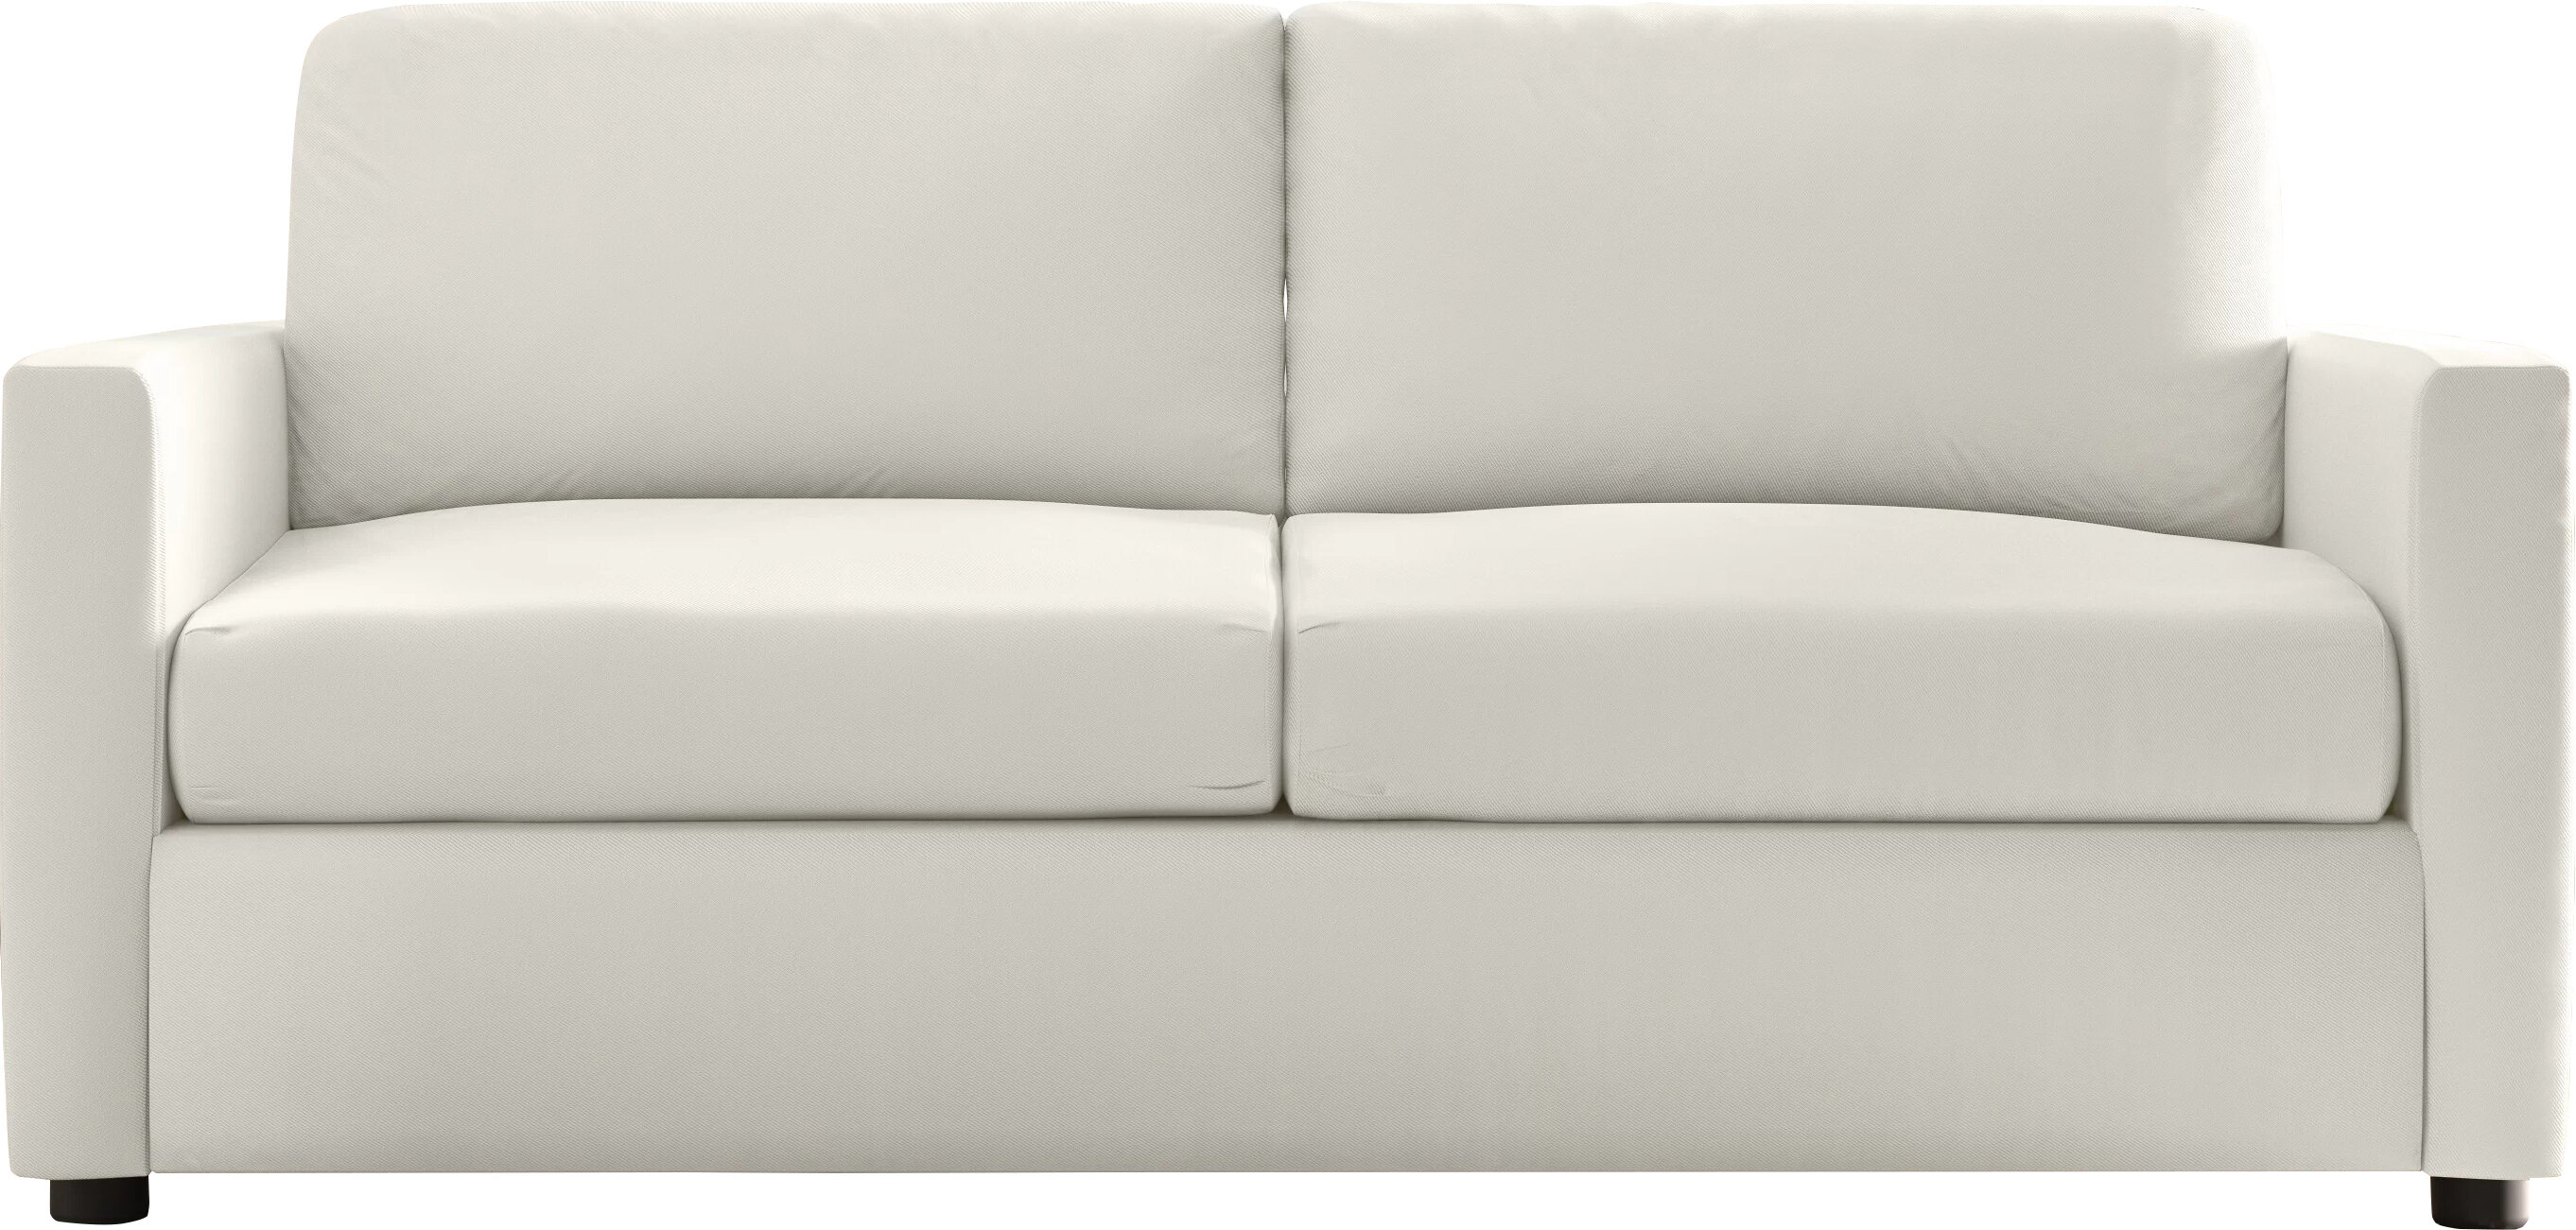 https://assets.wfcdn.com/im/07109183/compr-r85/9276/92761671/godwin-75-upholstered-sofa.jpg